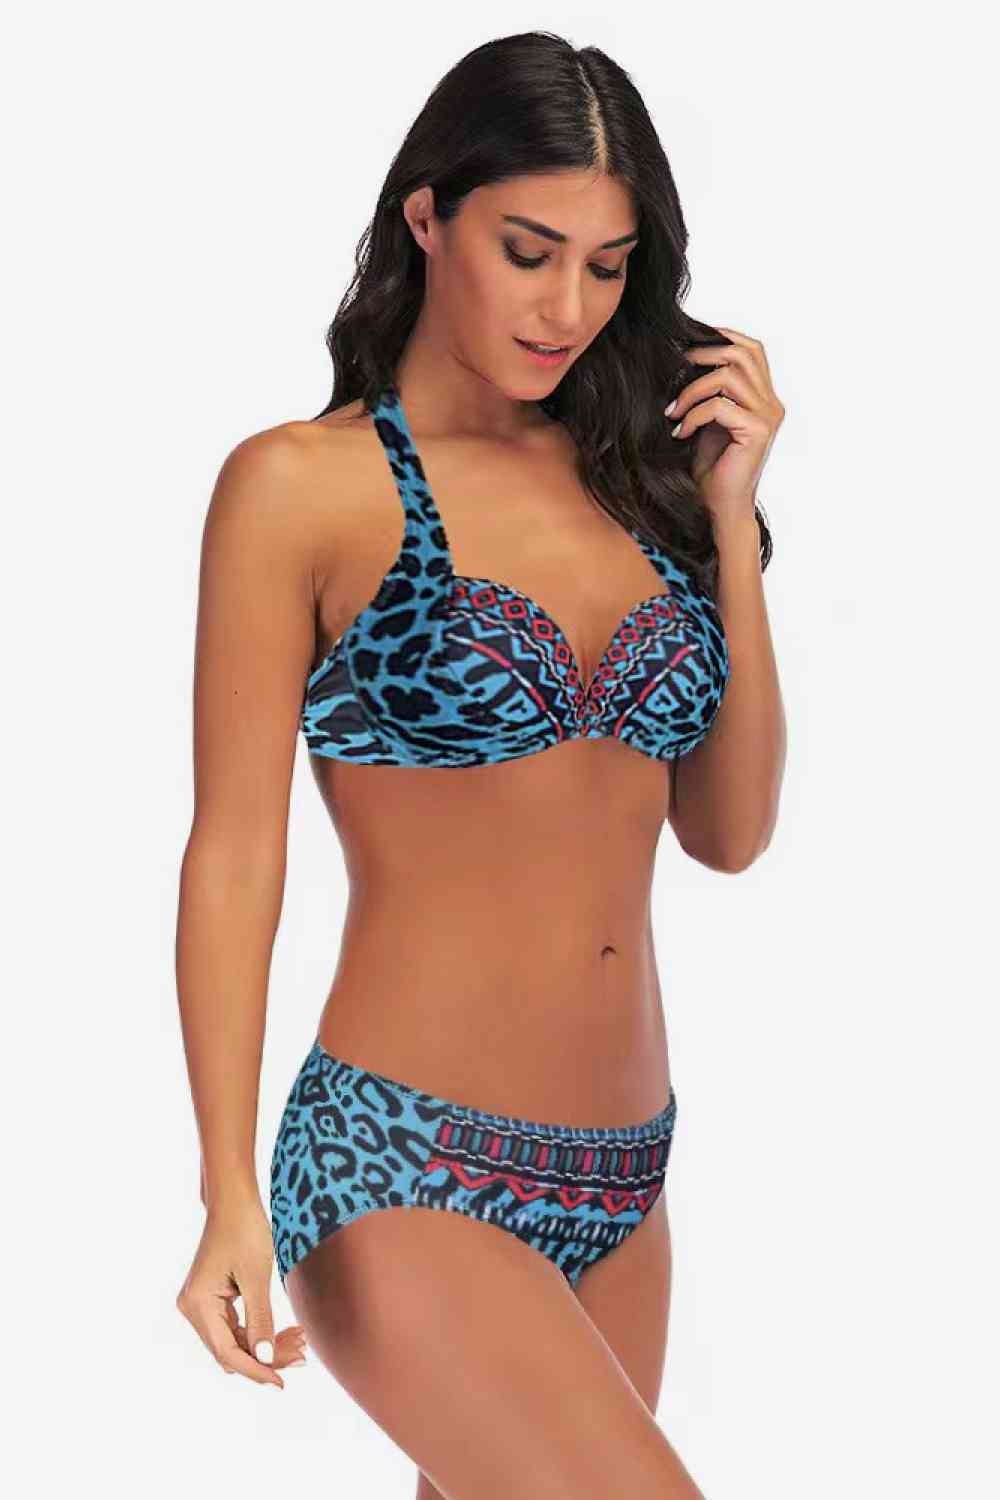 Leopard Bikini in Size M, L, XL, or 2XL